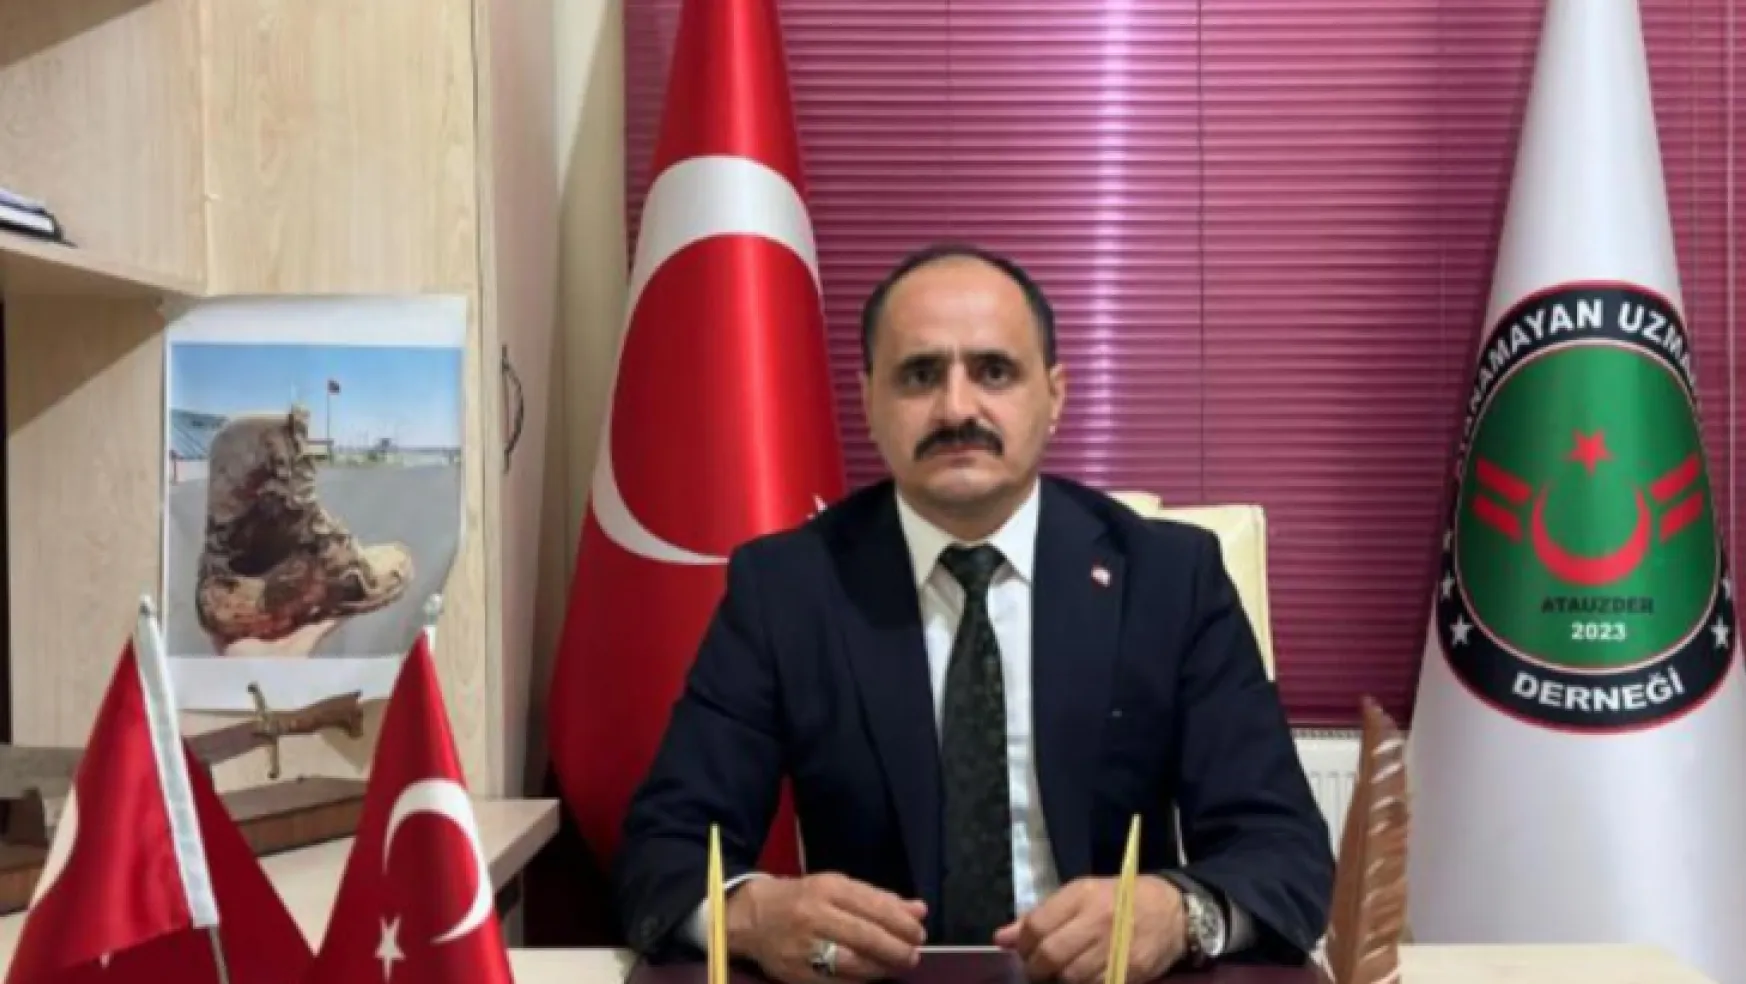 Atanamayan Uzmanlar Derneği Genel Başkanı Mustafa GÜNDEŞLİ CUMHURBAŞKANINA Çağrıda Bulundu